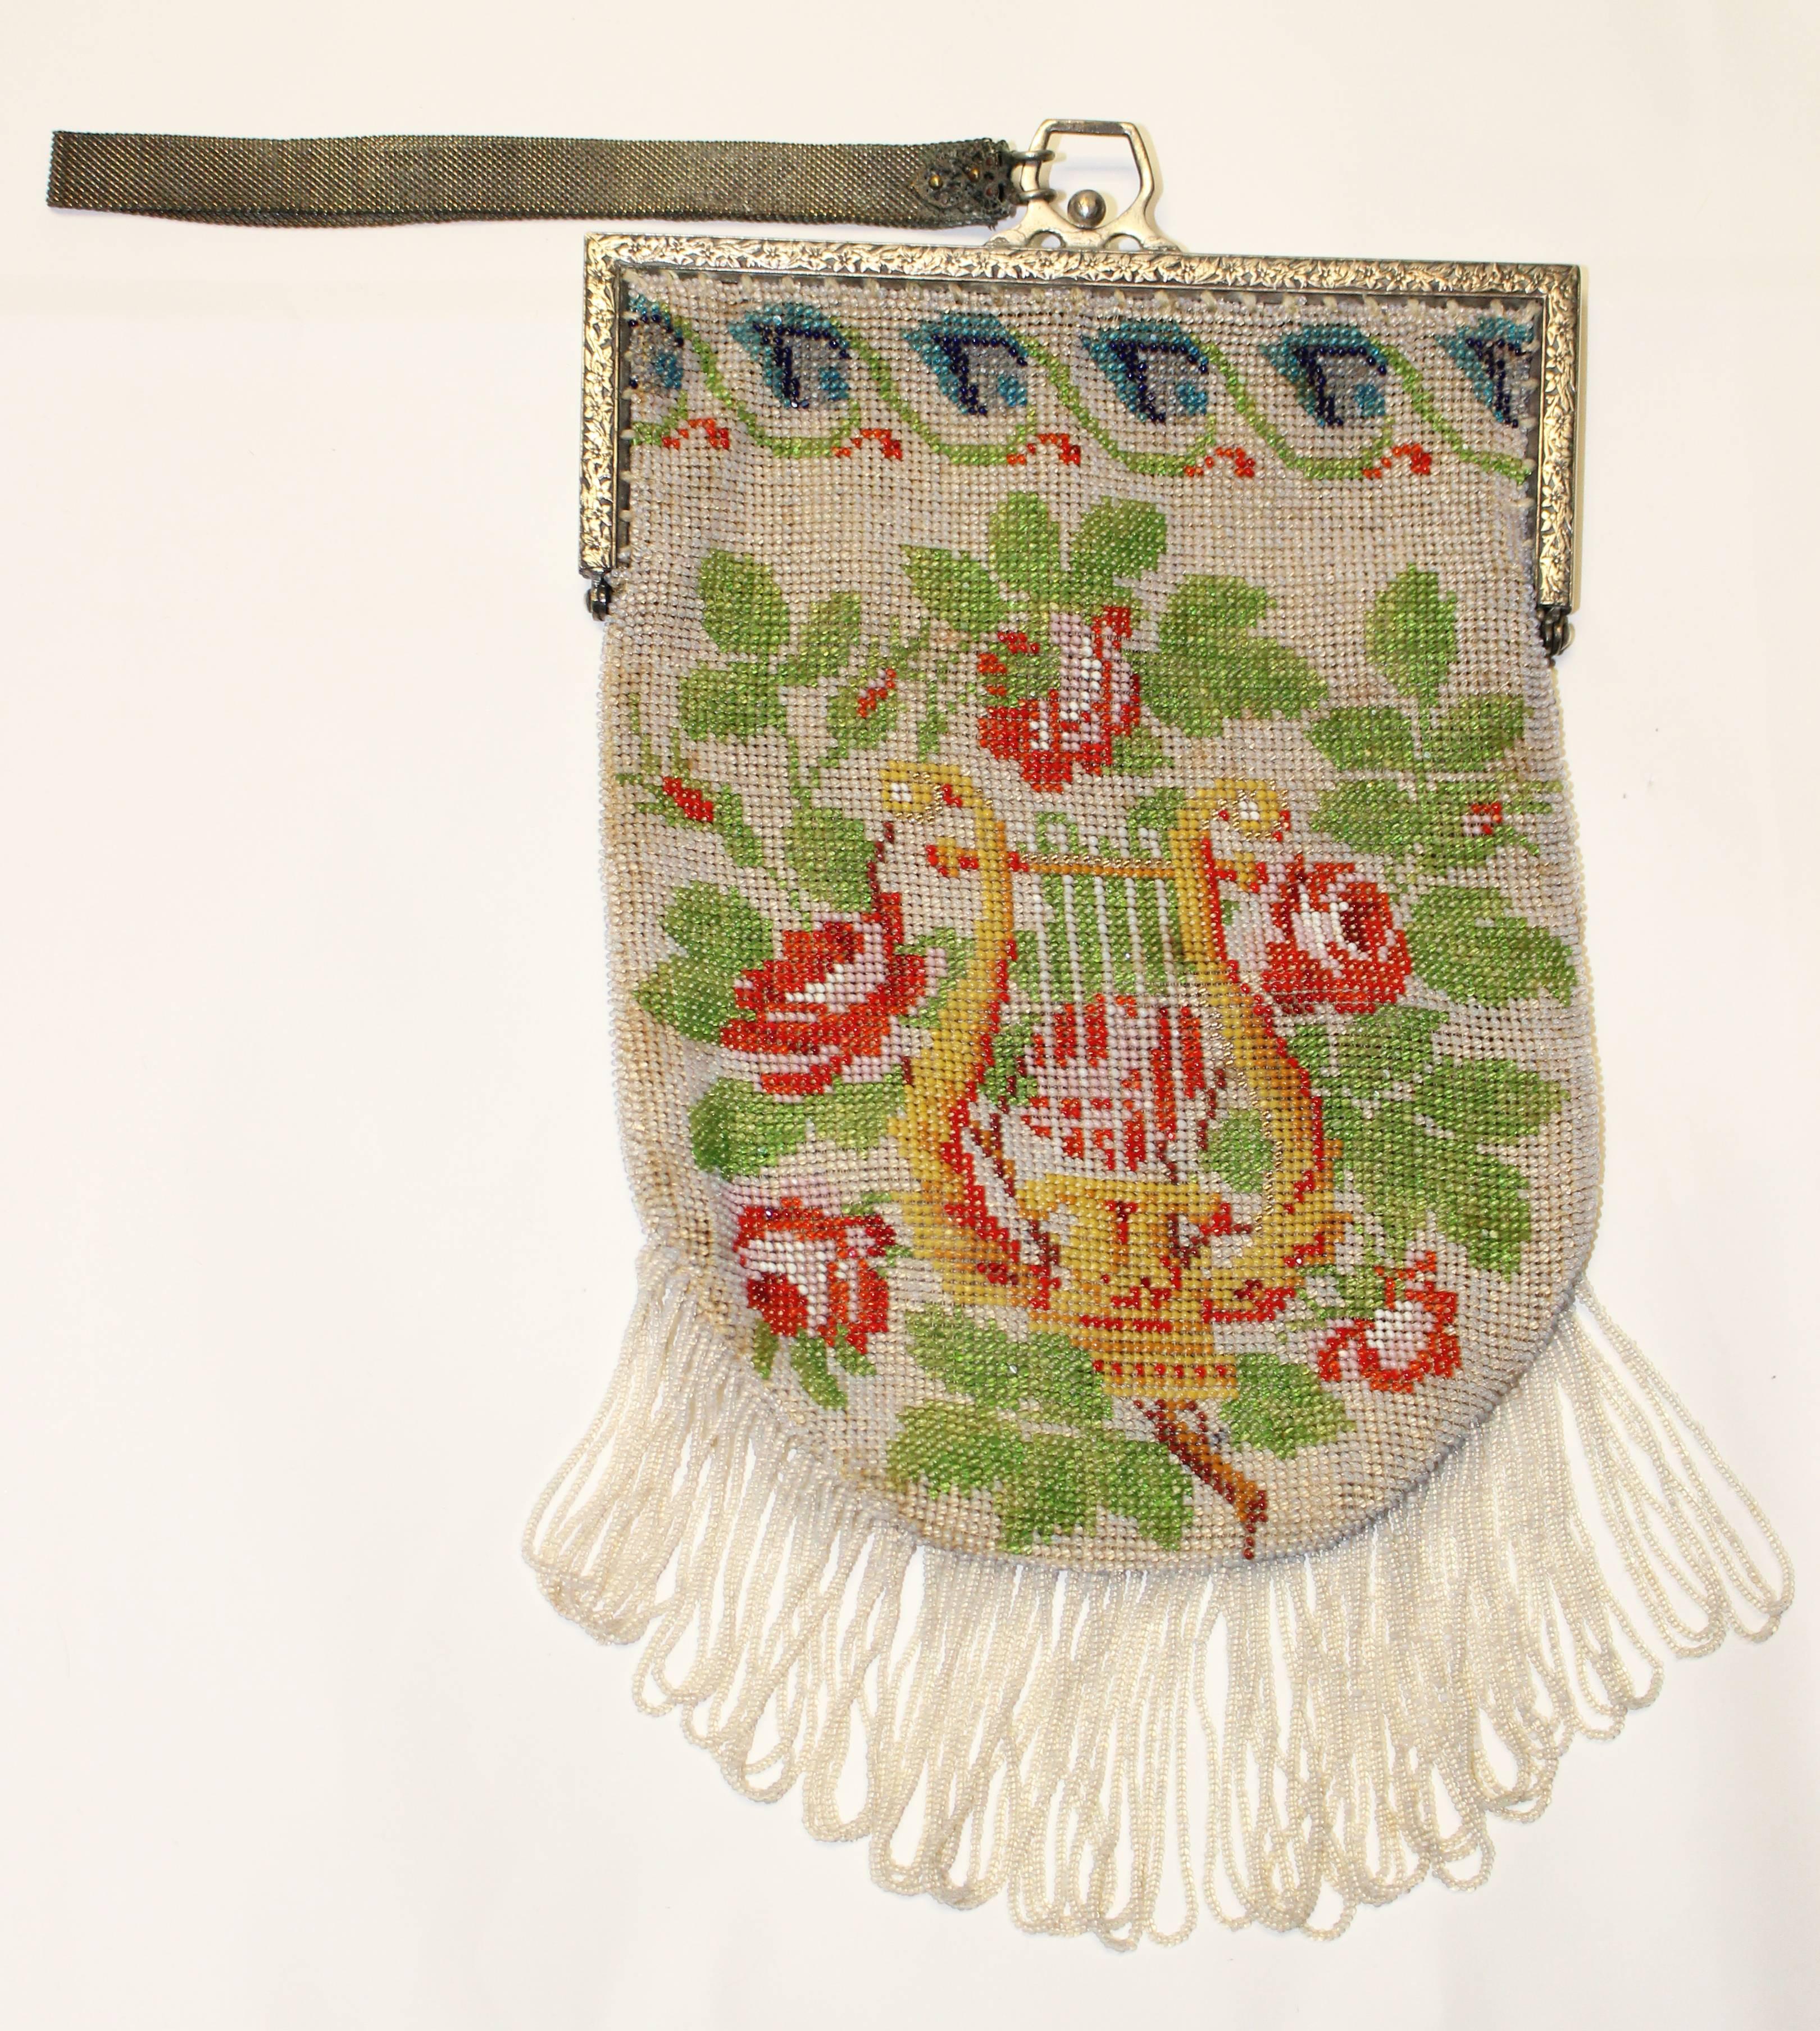 handgekettelte Handtasche aus den 1920er Jahren mit grünen Blättern, roten Rosen und einer Harfe auf einem weißen Feld aus Saatperlen. Blaue Blumen umrahmen den oberen Rand. Silberfarbener geprägter Rahmen. Unbeschriftet. Geschlungene